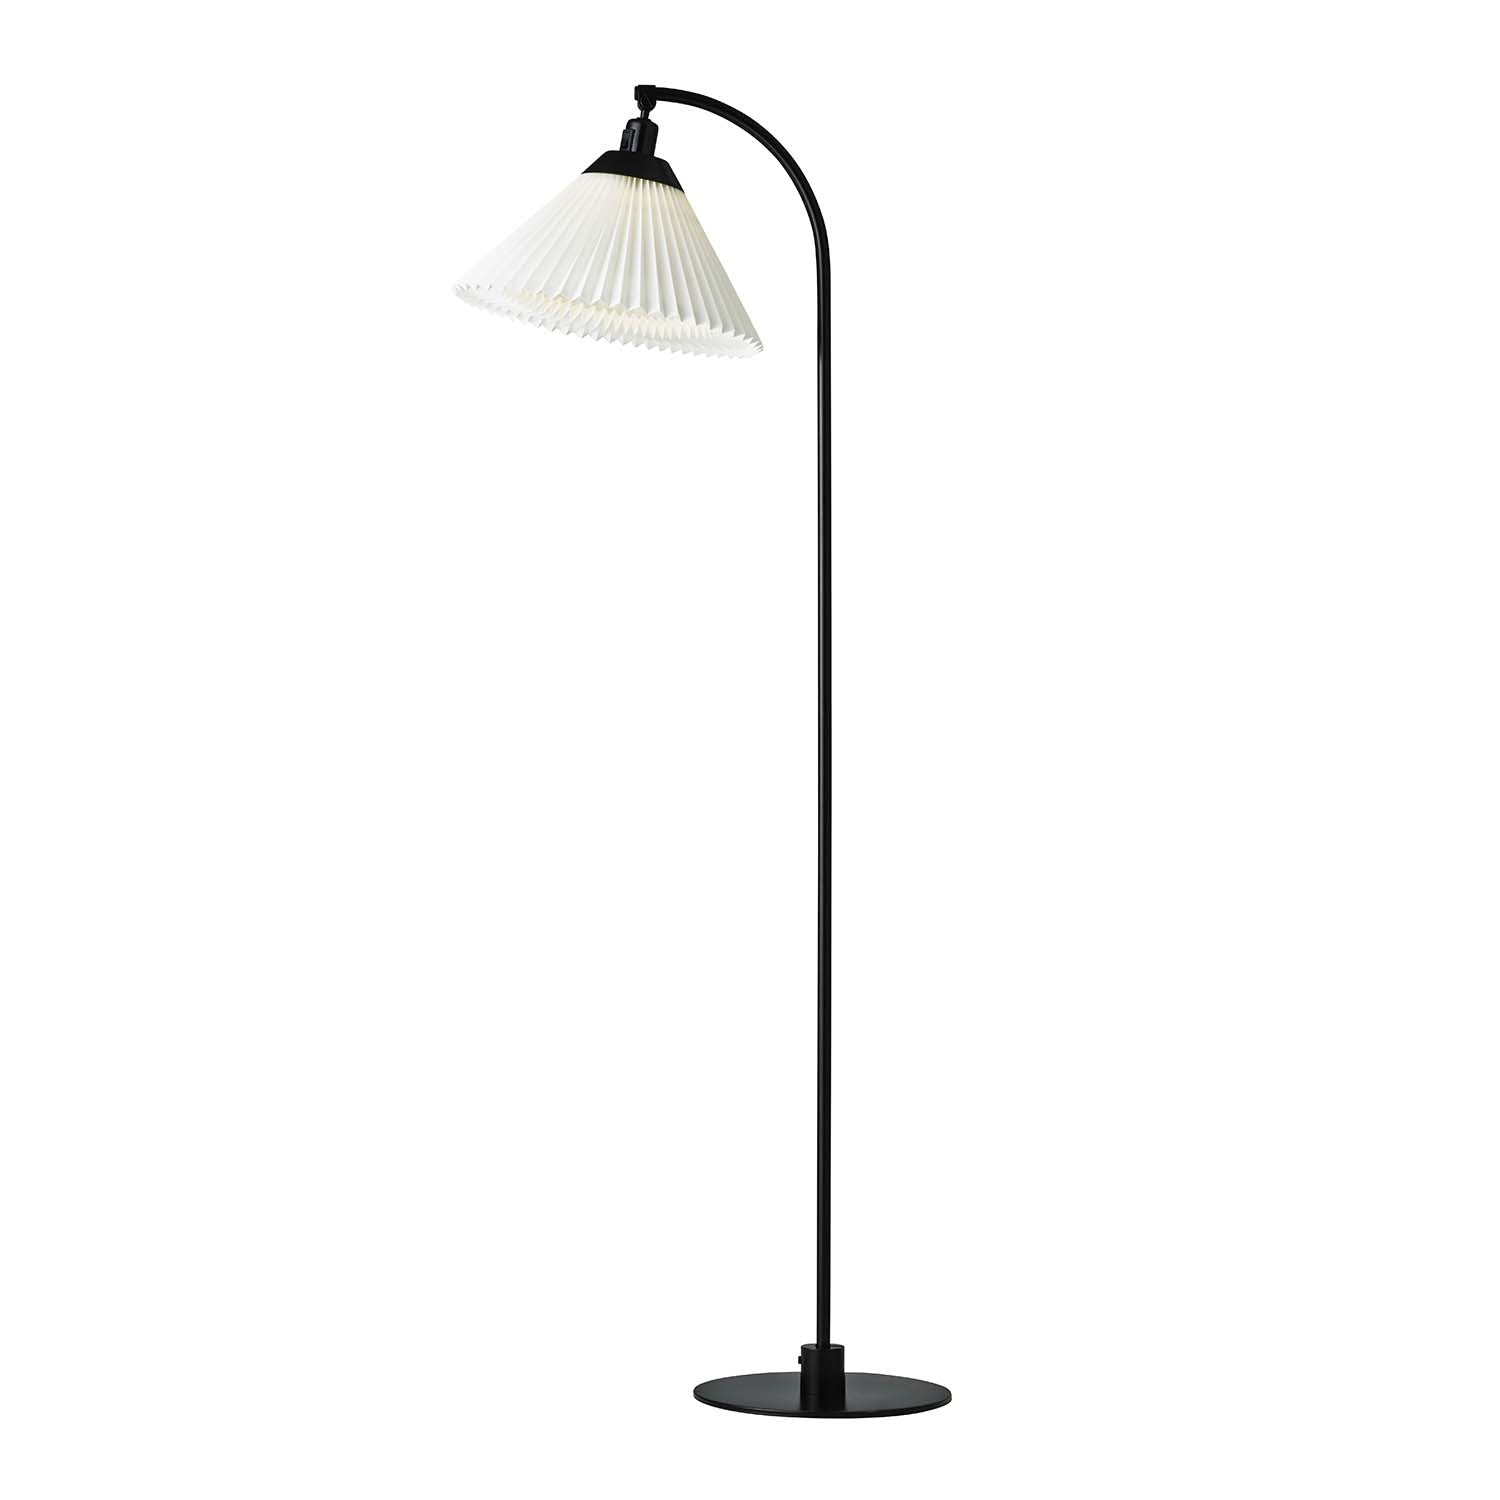 CLASSIC 368 – Handgefertigte Vintage-Stehlampe in Schwarz und Weiß